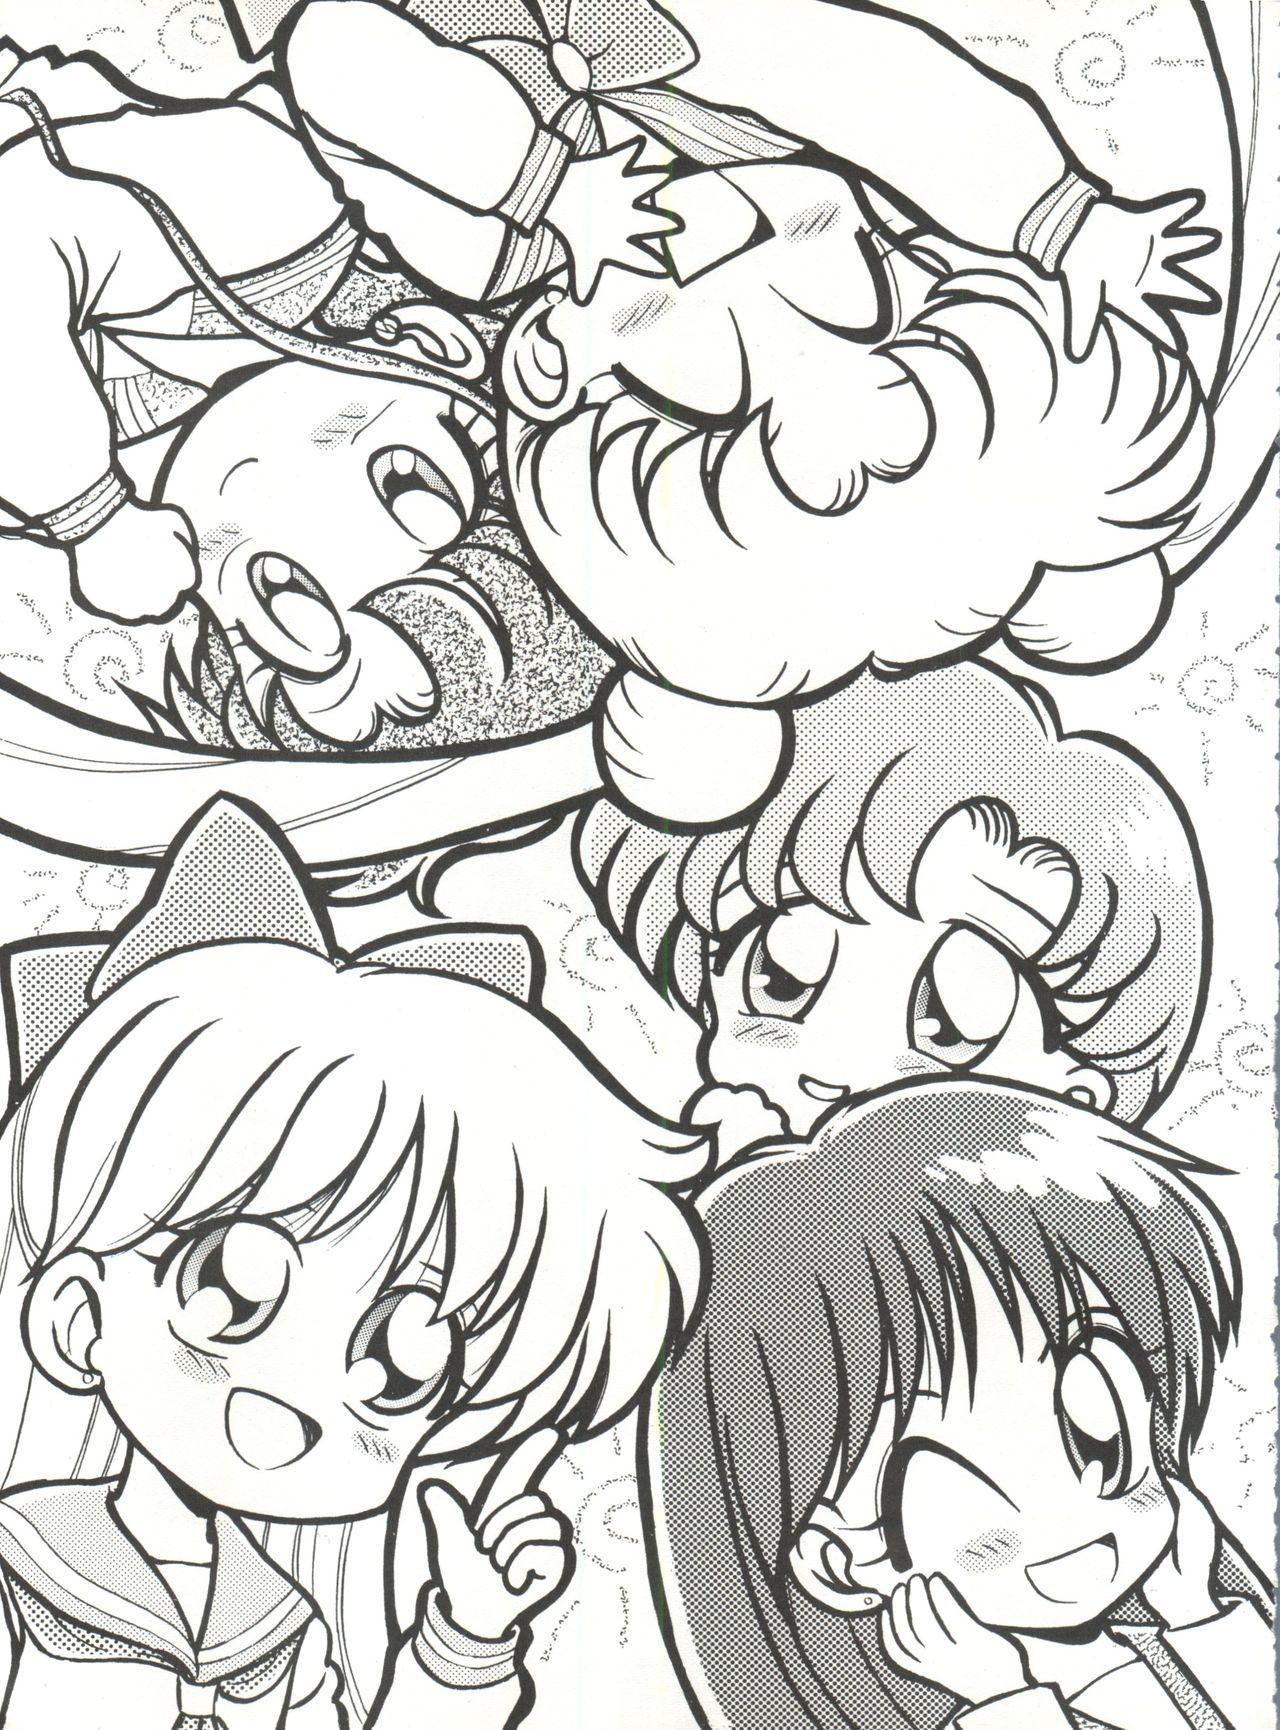 Adolescente Gekkou 4 - Sailor moon Caught - Page 4